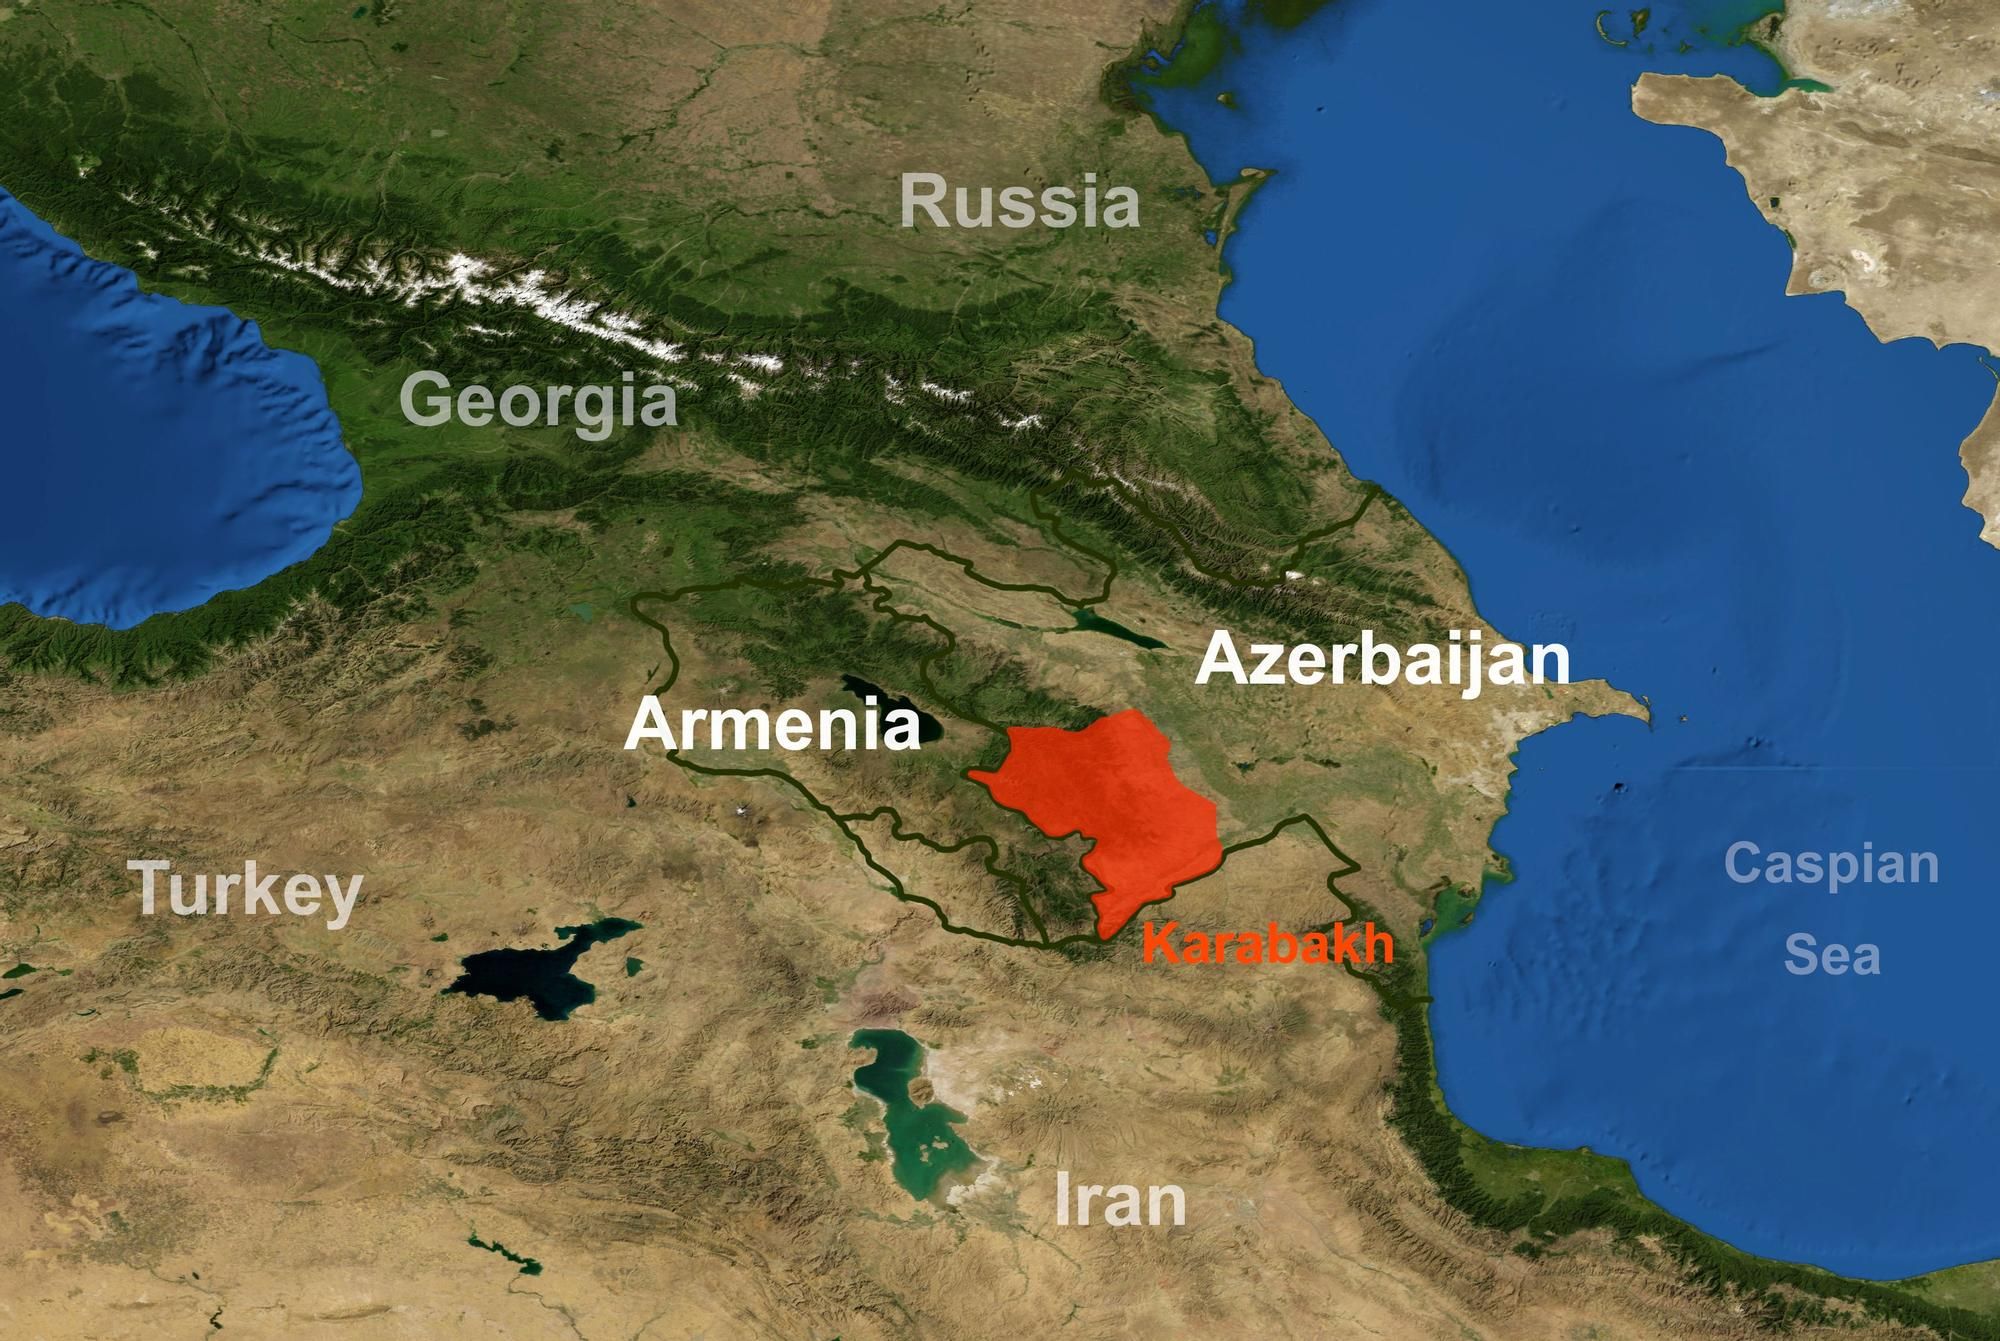 Mapa de la zona en conflicto entre Armenia y Azerbaiyán.